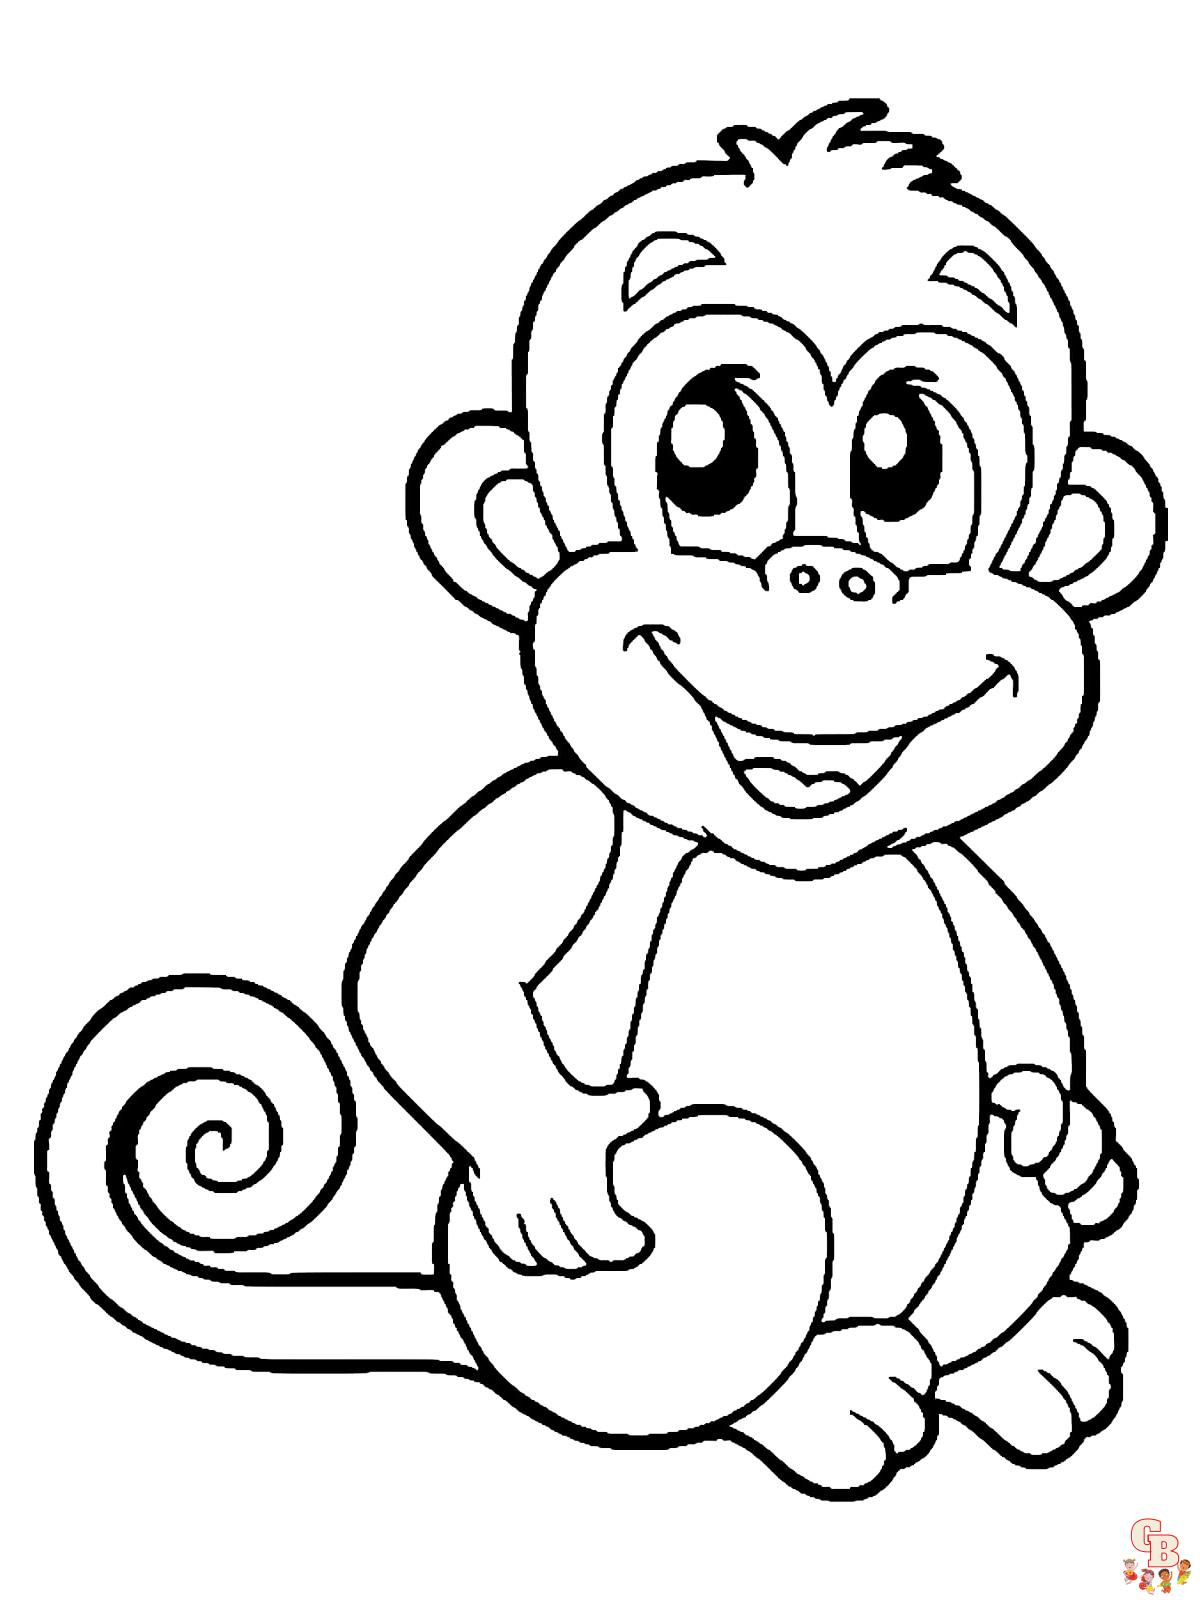 Desenhos de Macacos para Imprimir e Colorir